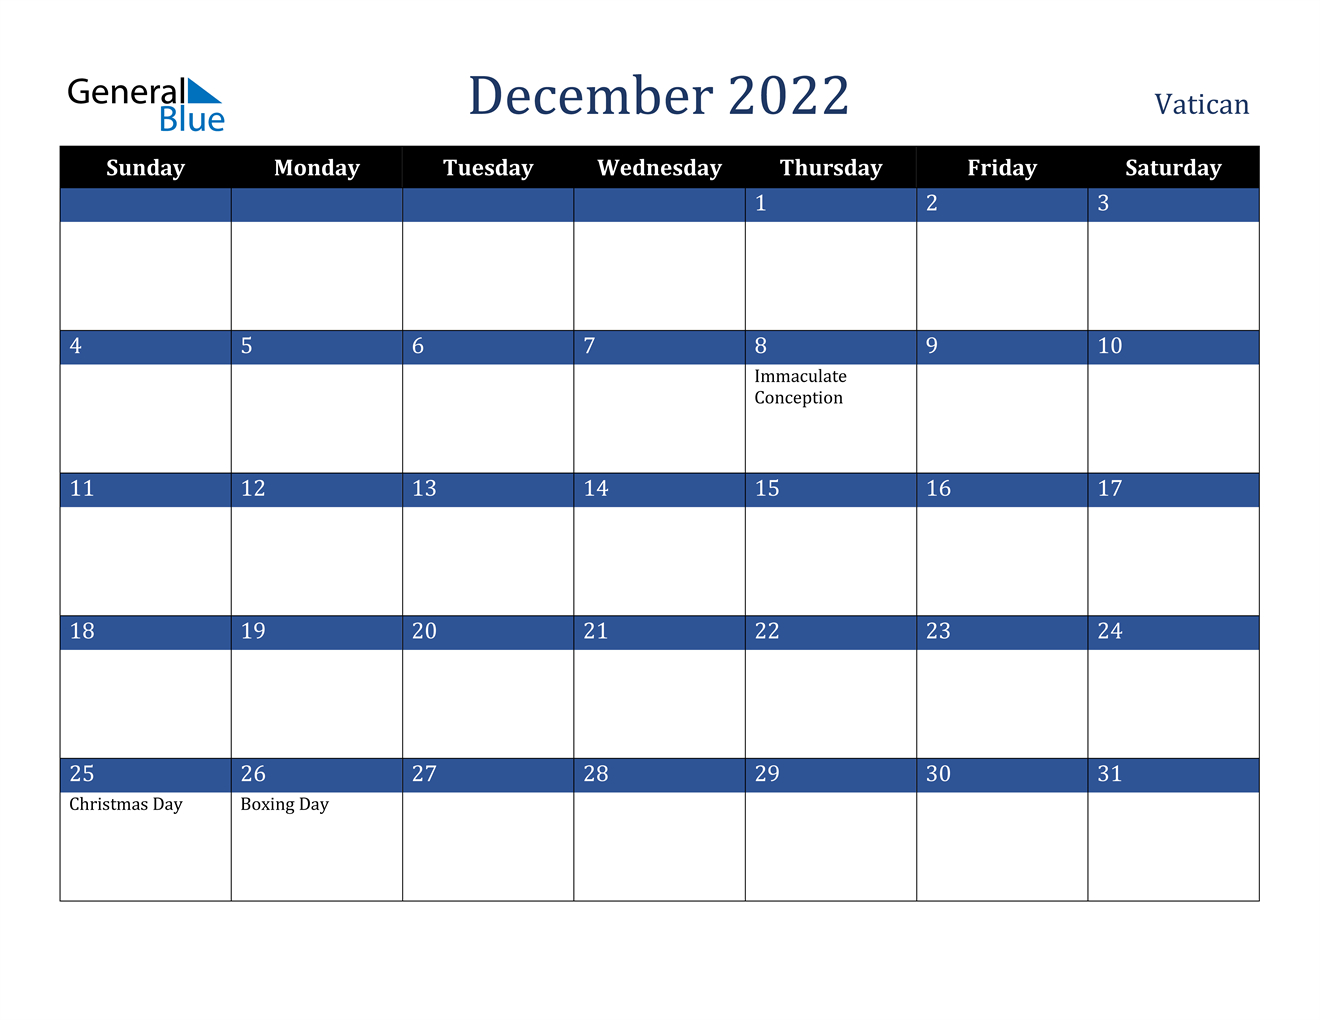 December 2022 Calendar - Vatican